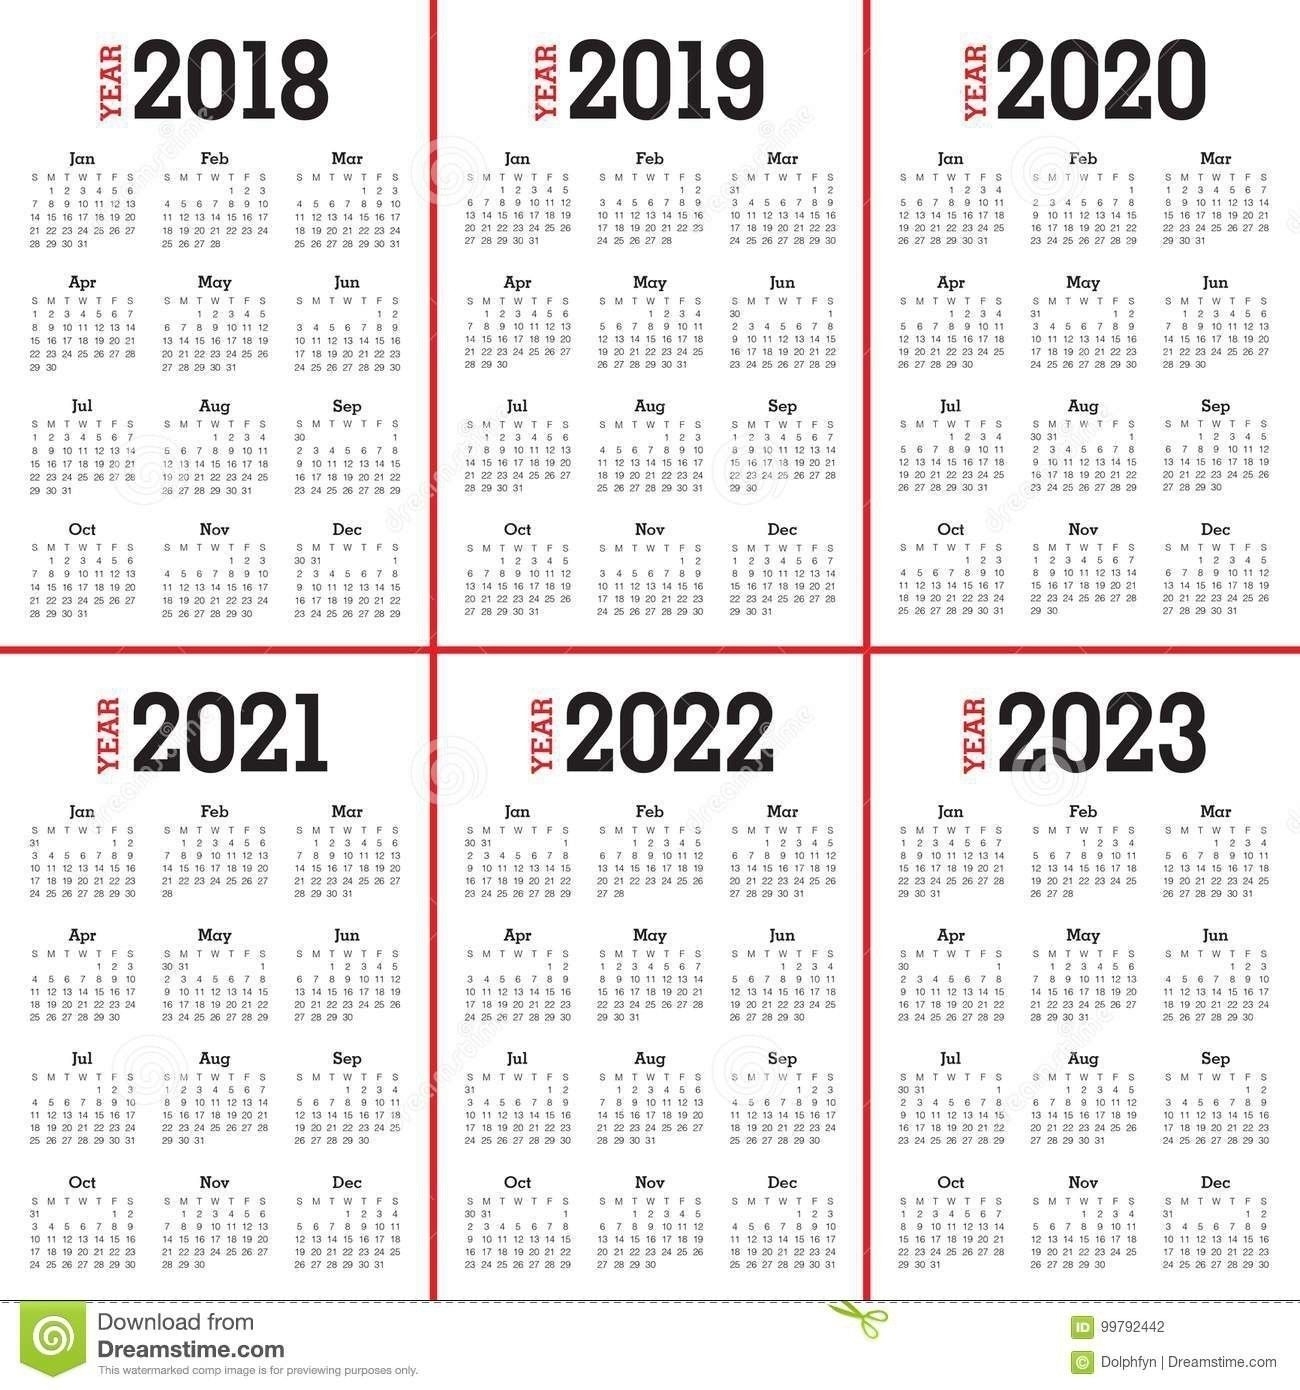 3 Year Calendar 2021 To 2023 Di 2020 | Stiker